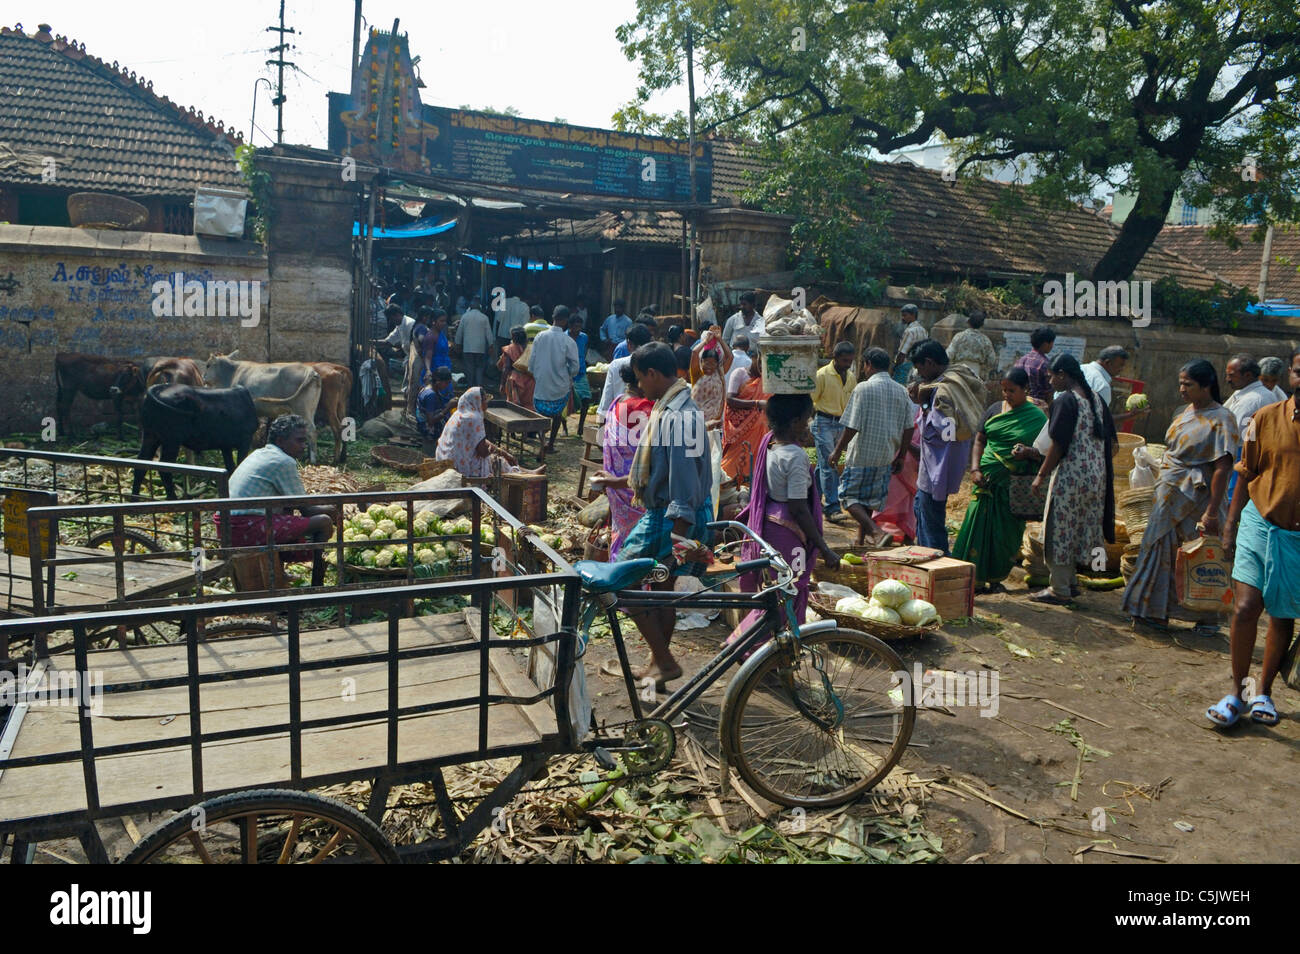 L'Inde, le Tamil Nadu, Madurai, 2005. Location de transport à trois roues sur un marché à Madurai. Banque D'Images